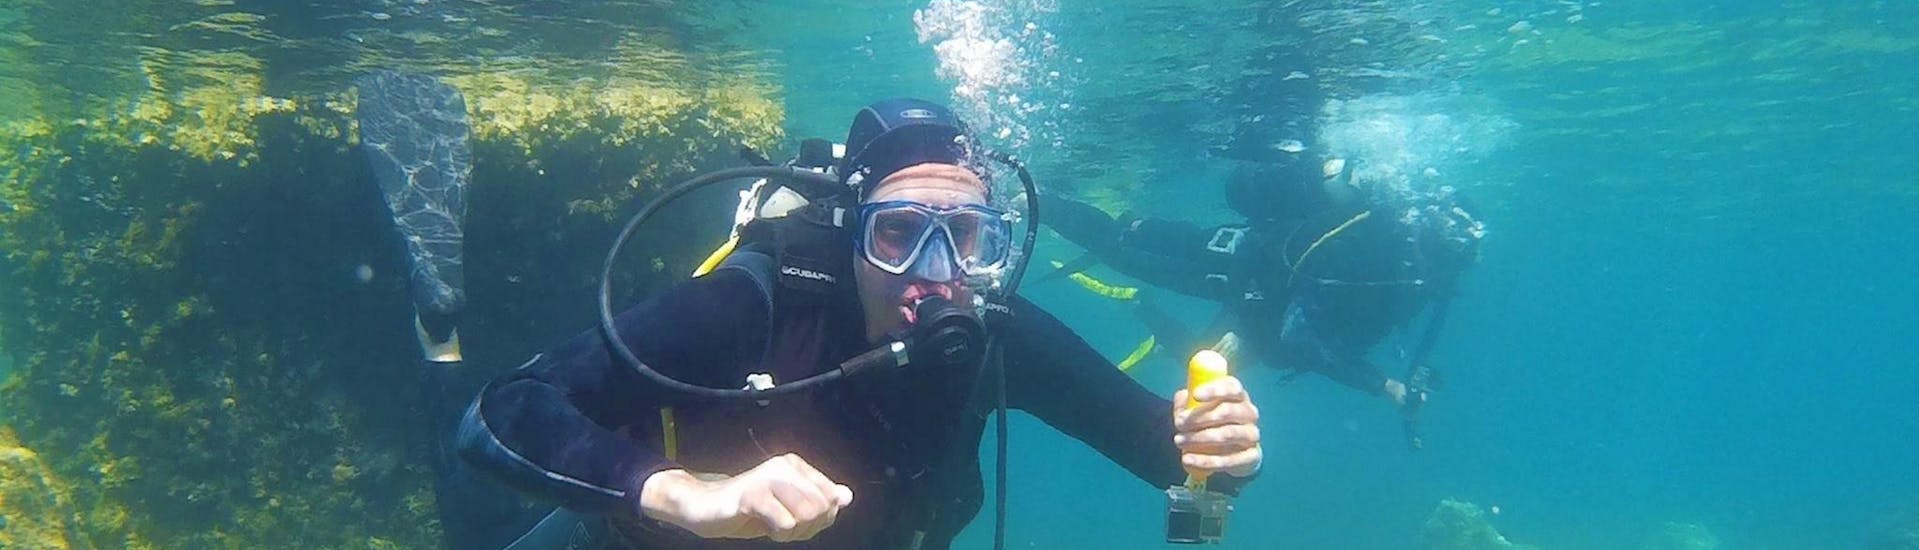 Un homme fait son baptême de plongée sous-marine dans la baie de Kontokali avec Scubanauts Corfu Diving Center.